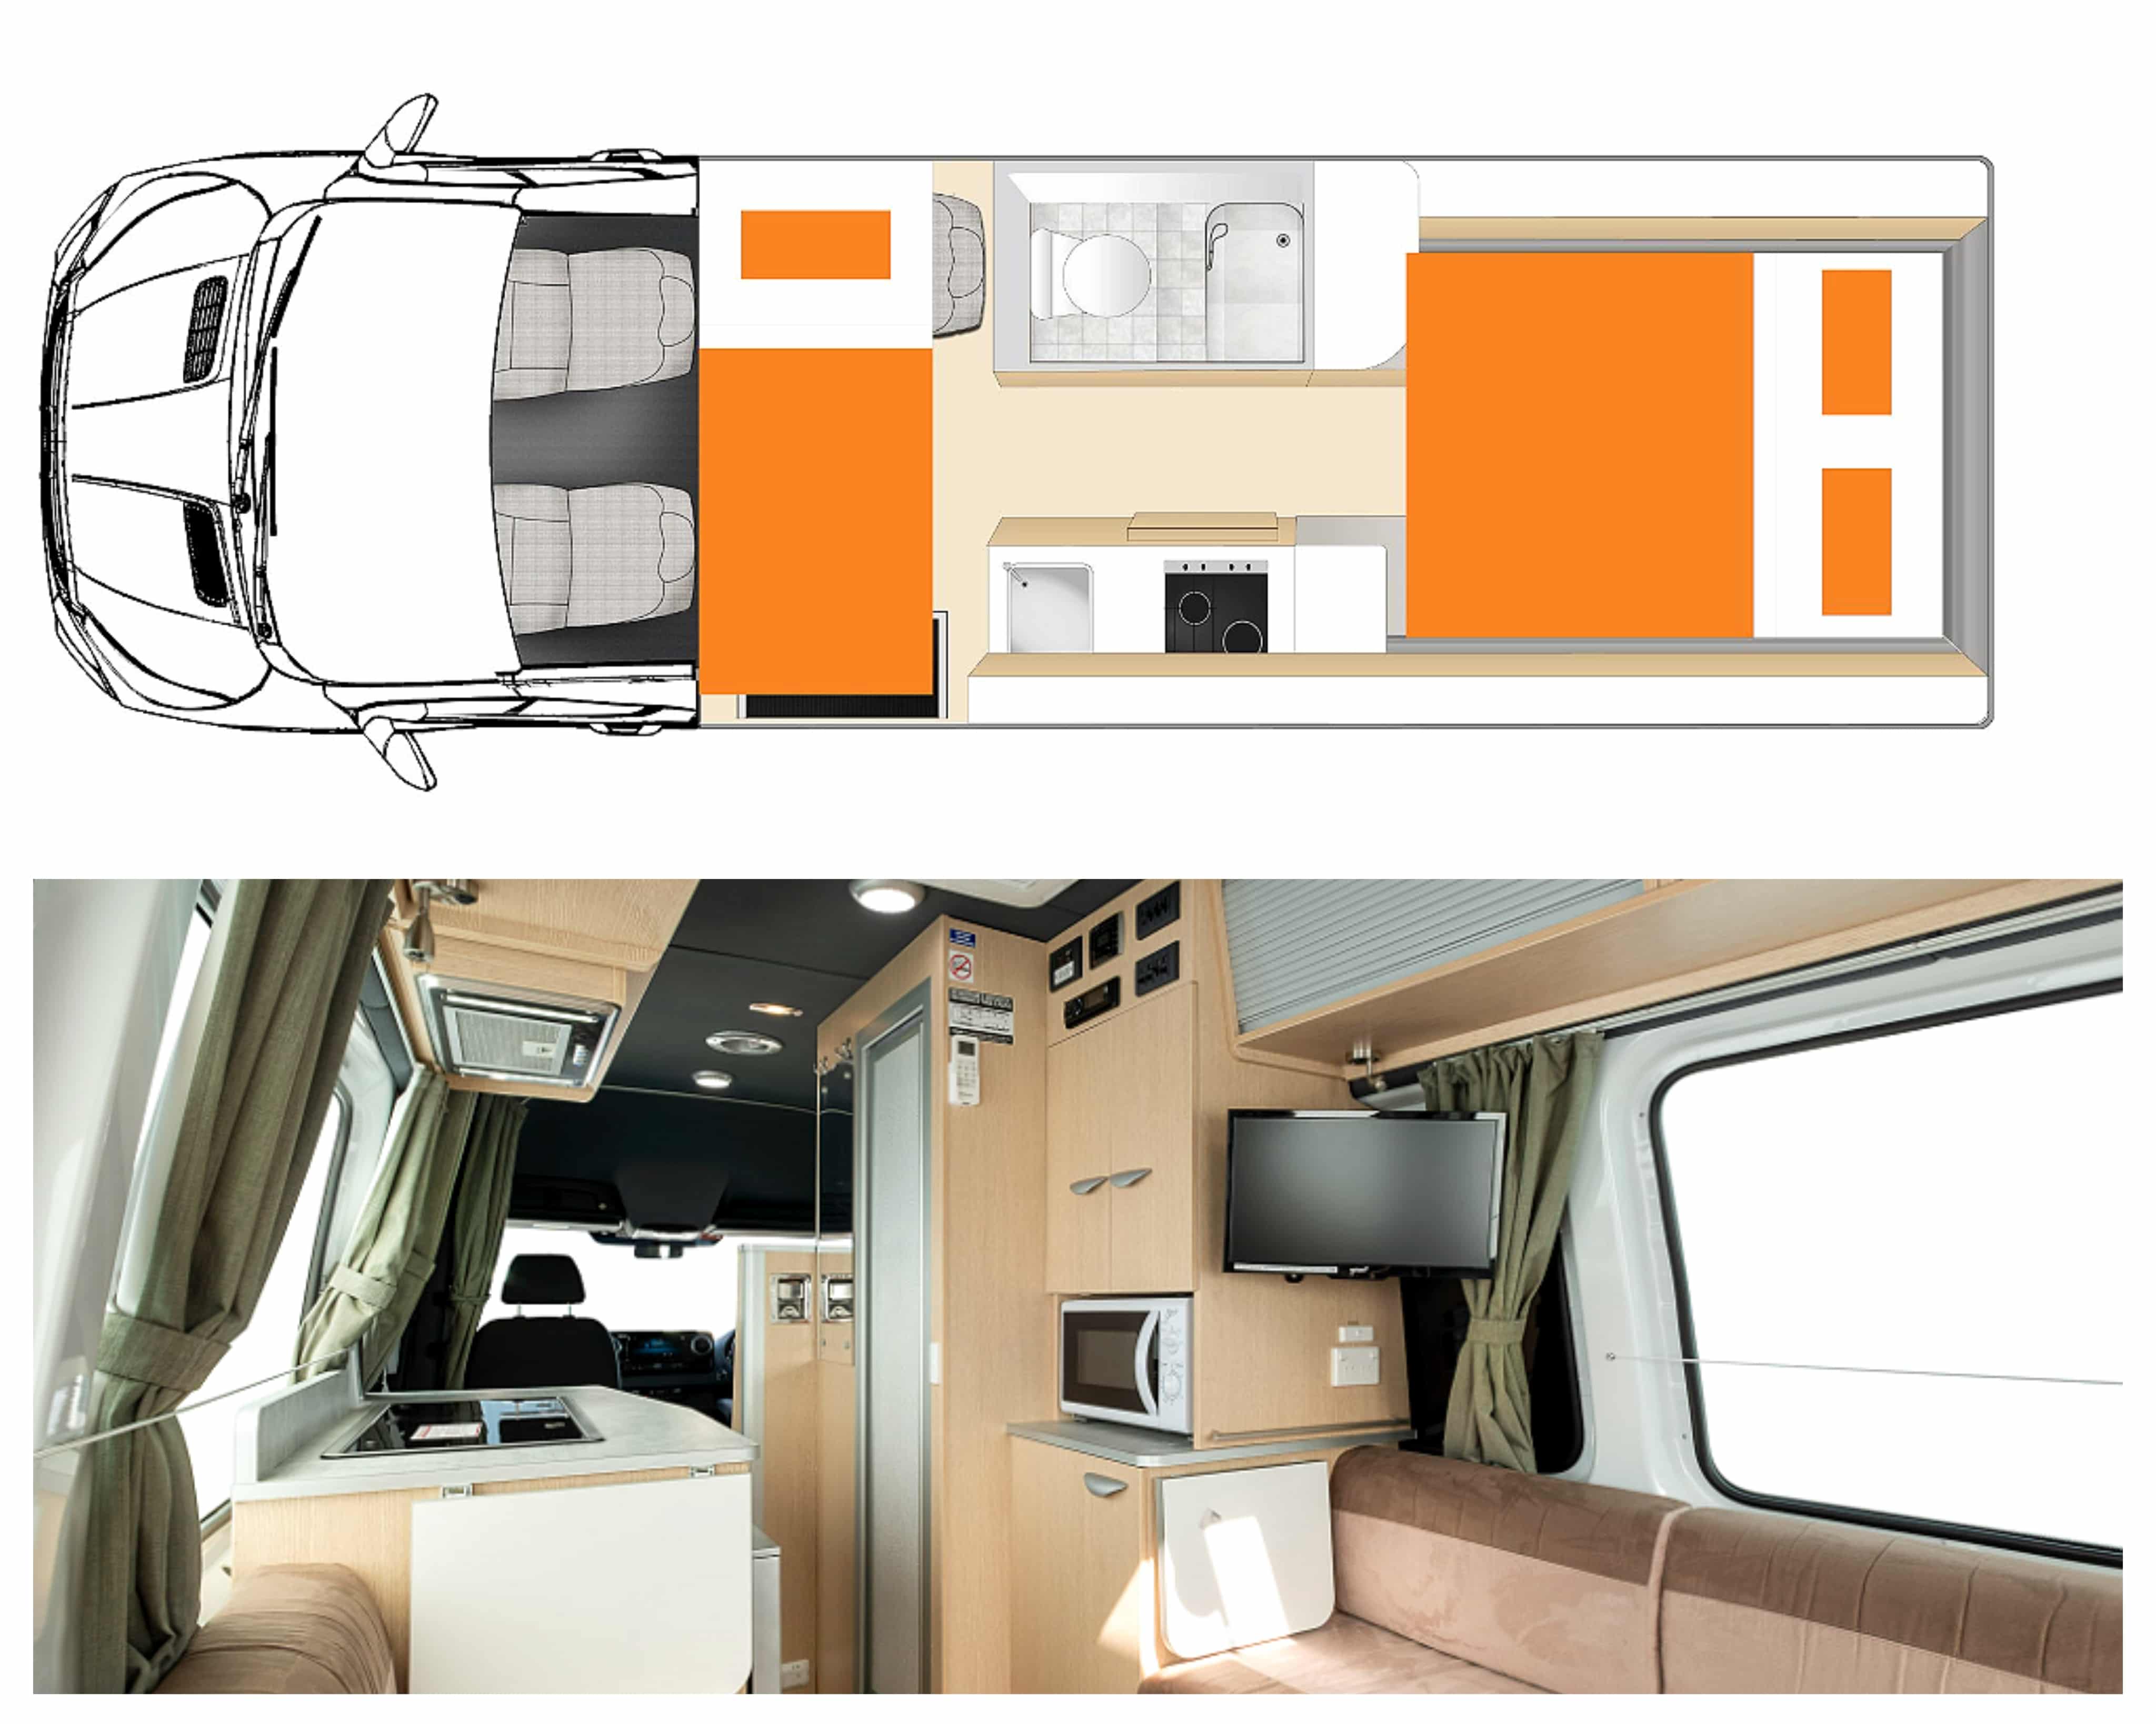 Plan et photo intérieur camping-car modèle Apollo Euro Plus en Australie